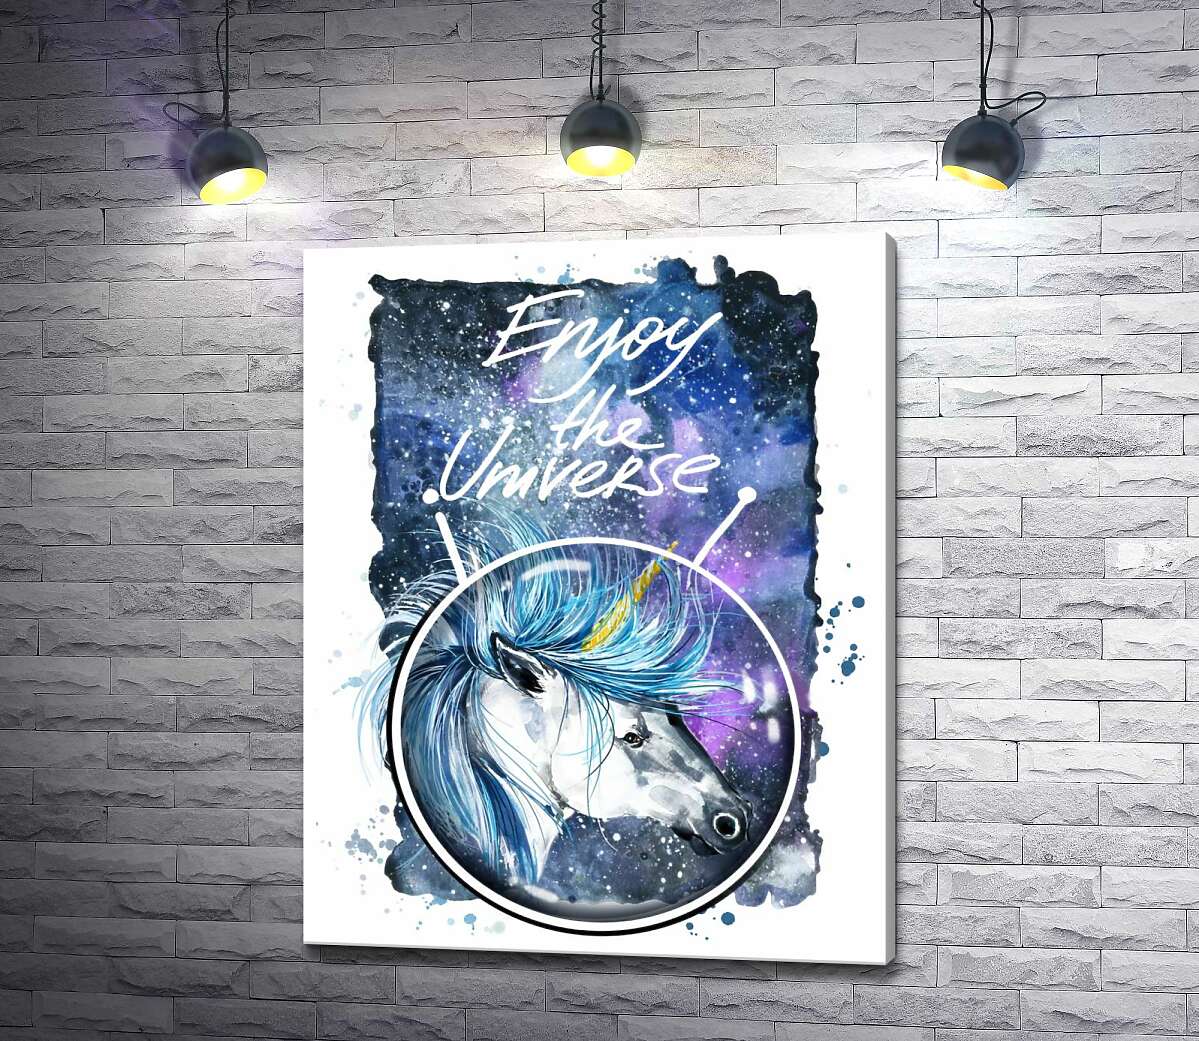 картина Голубая грива единорога развевается в космическом пространстве рядом с надписью "Enjoy the Universe"